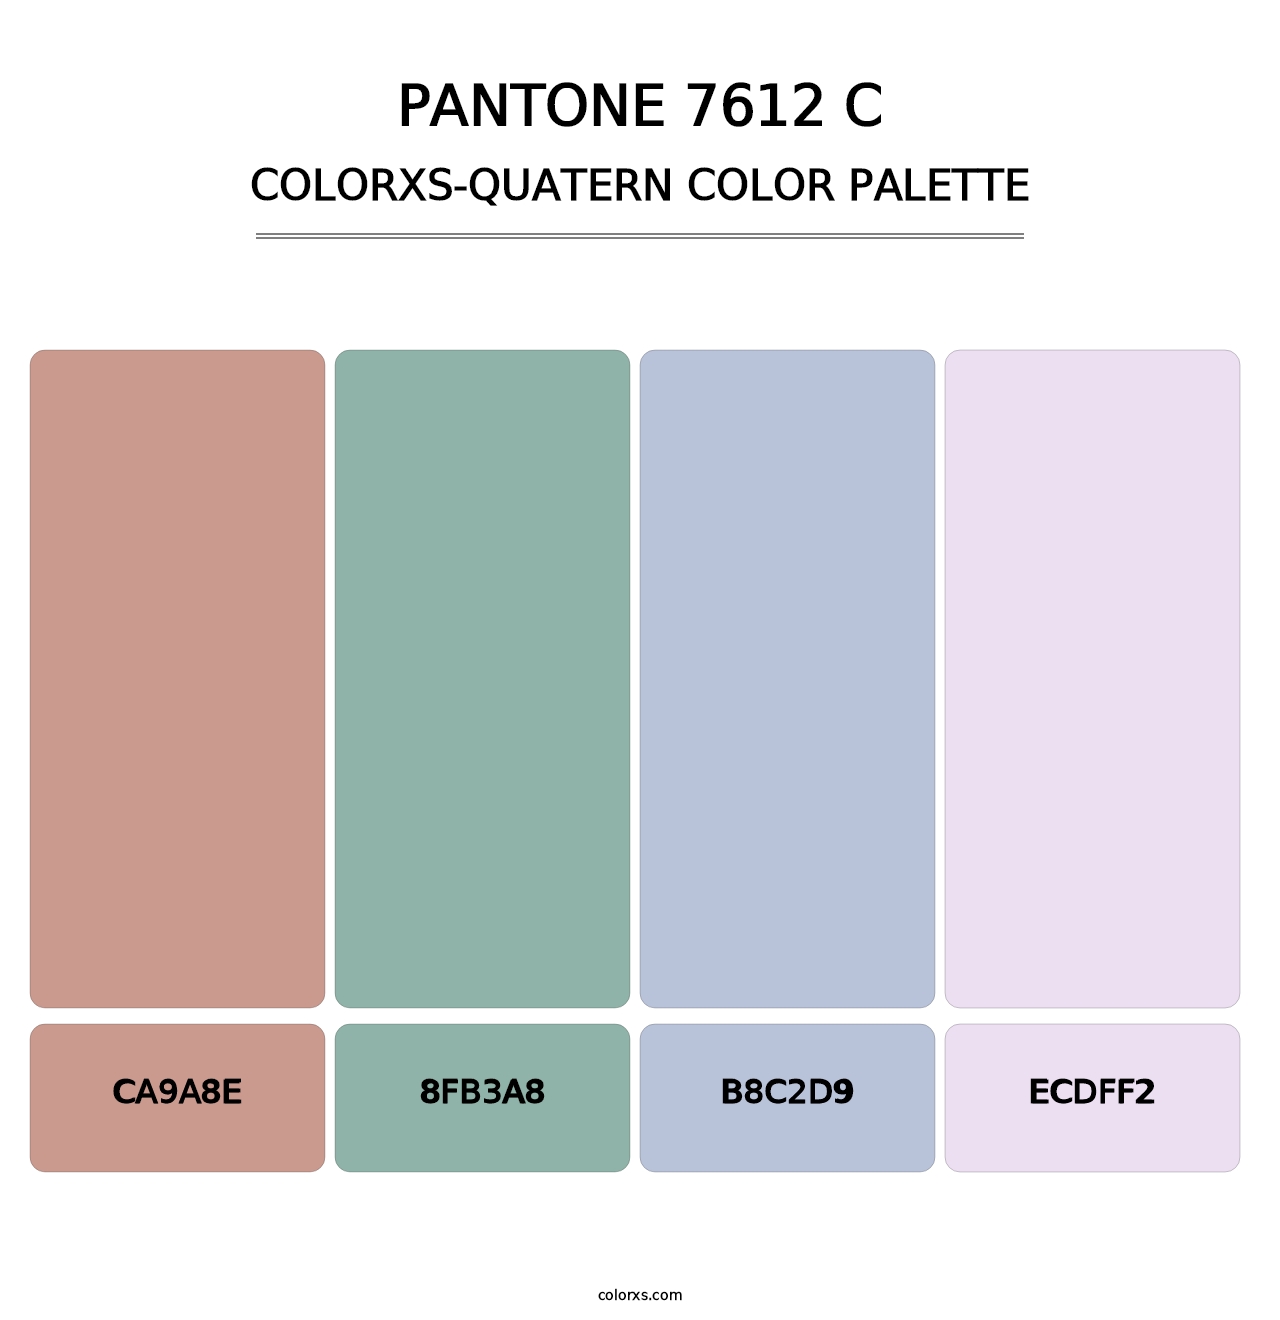 PANTONE 7612 C - Colorxs Quatern Palette